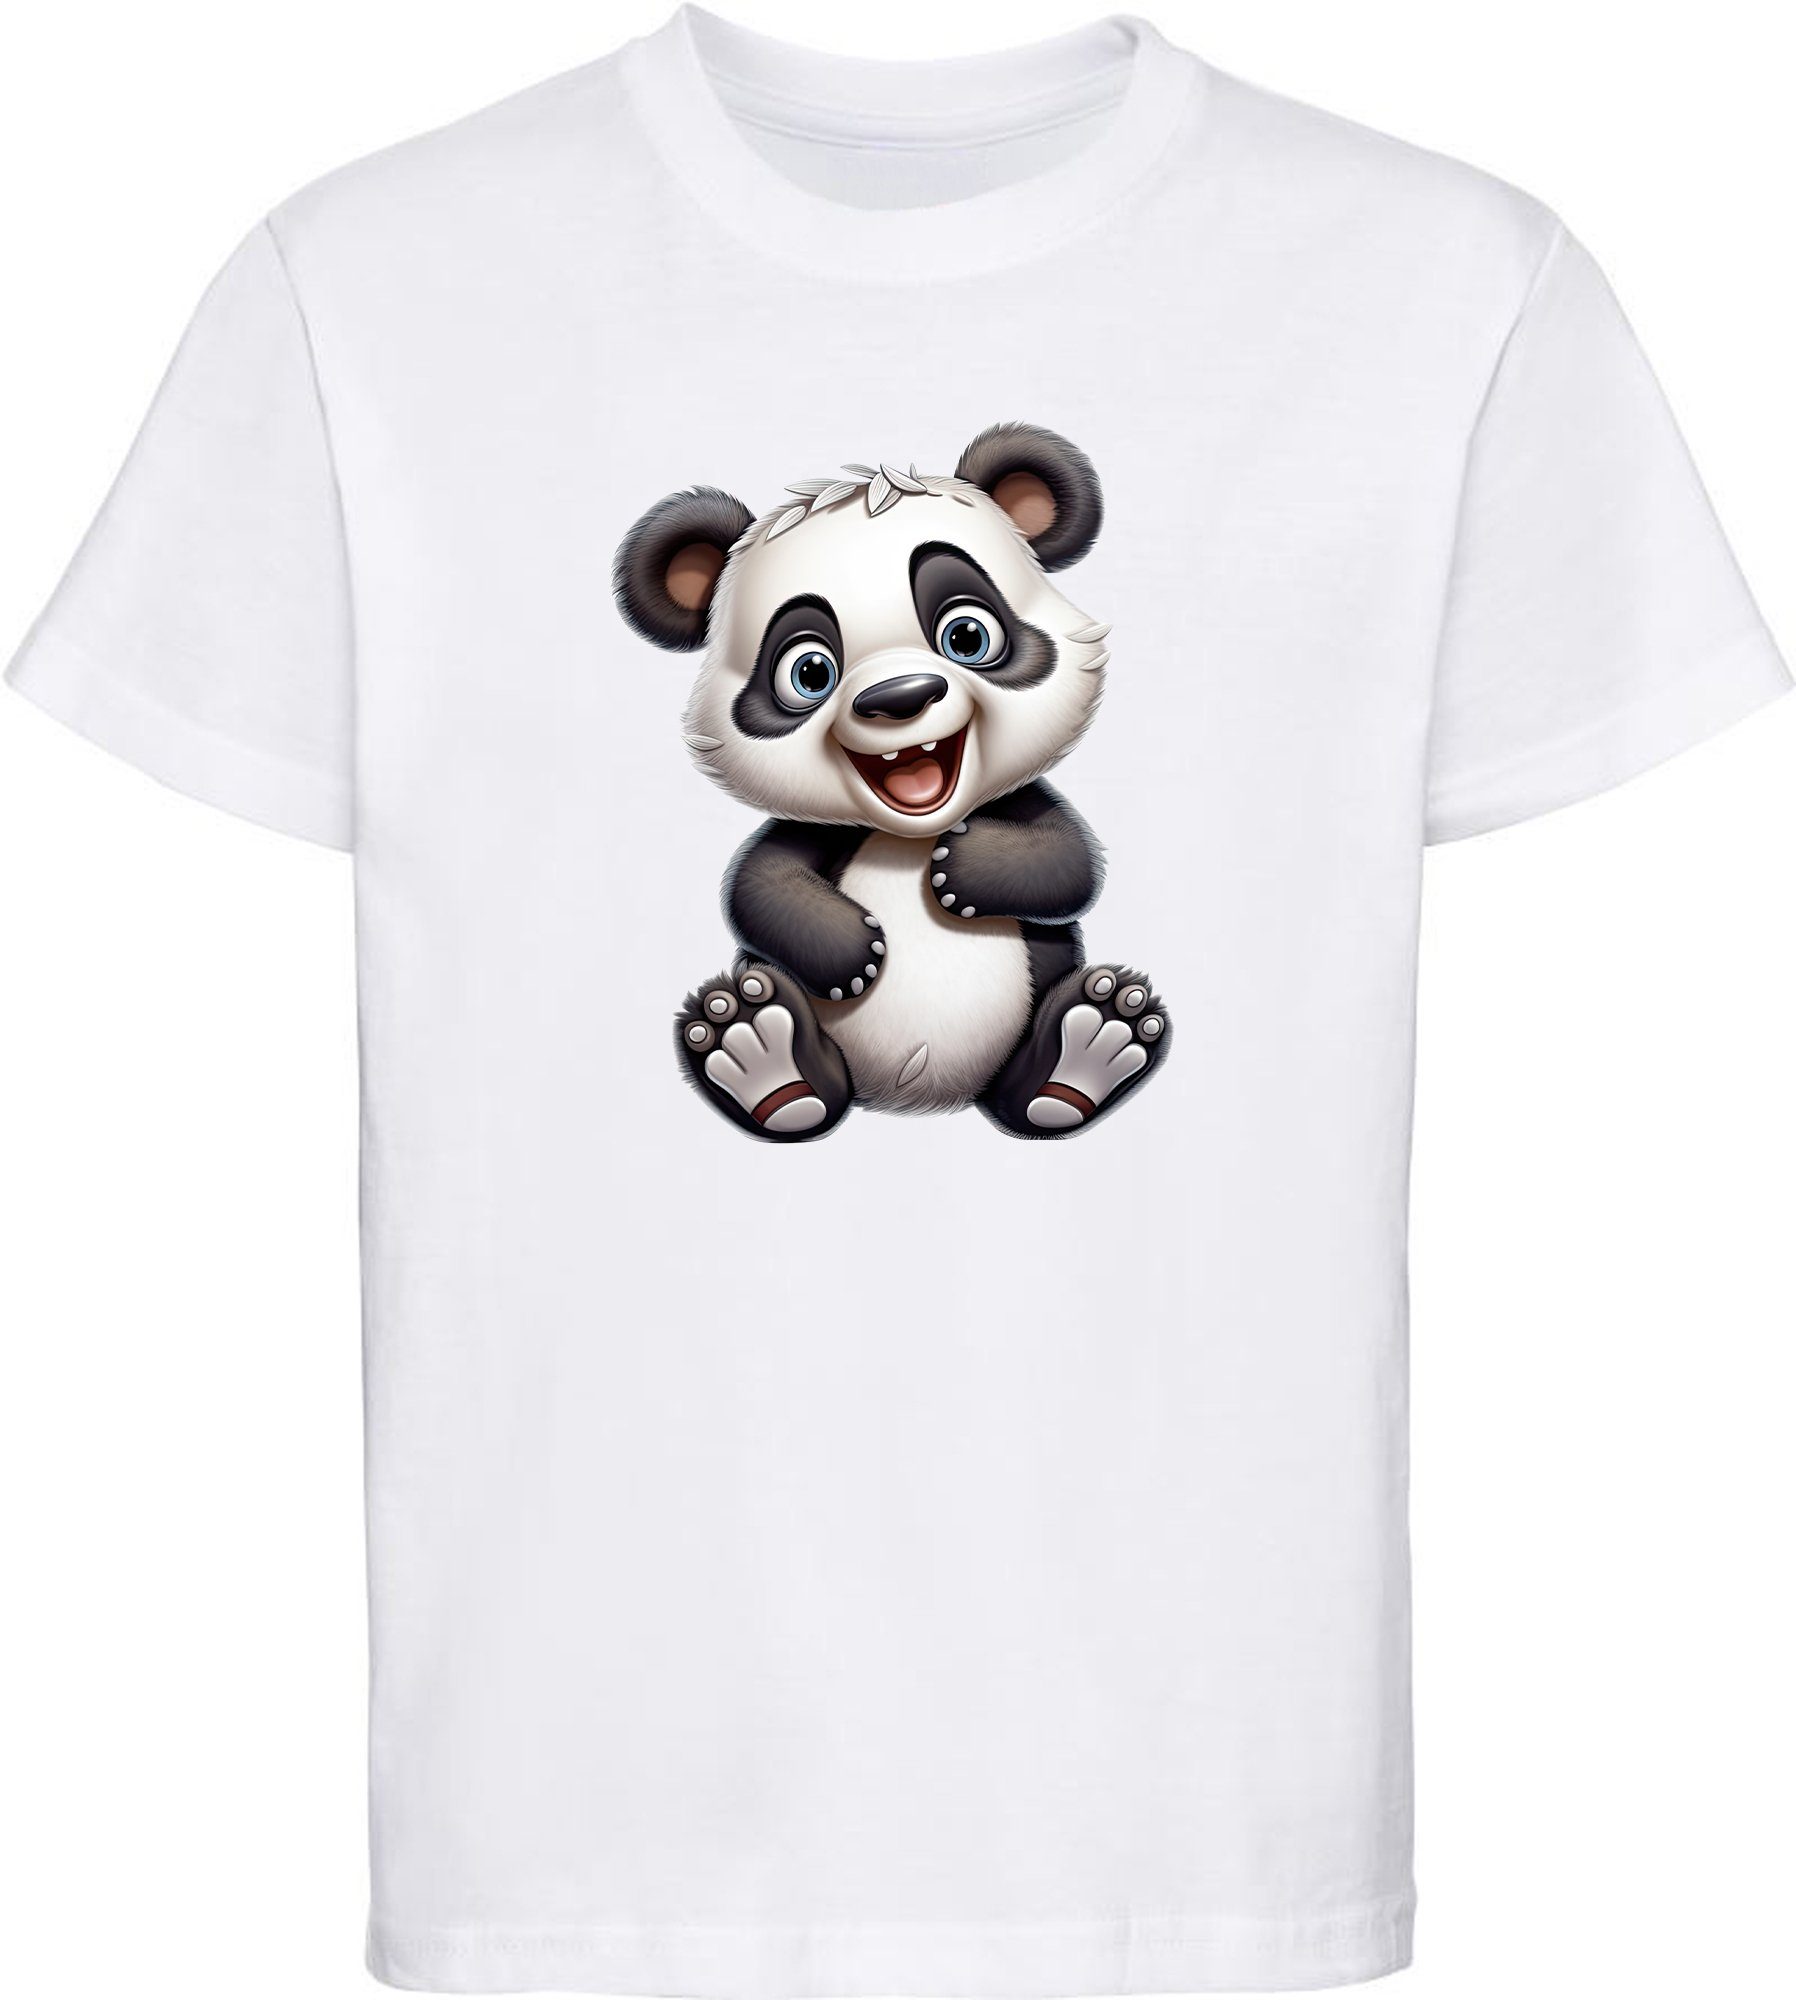 MyDesign24 T-Shirt Kinder Wildtier Print Shirt bedruckt - Baby Panda Bär Baumwollshirt mit Aufdruck, i277 weiss | T-Shirts